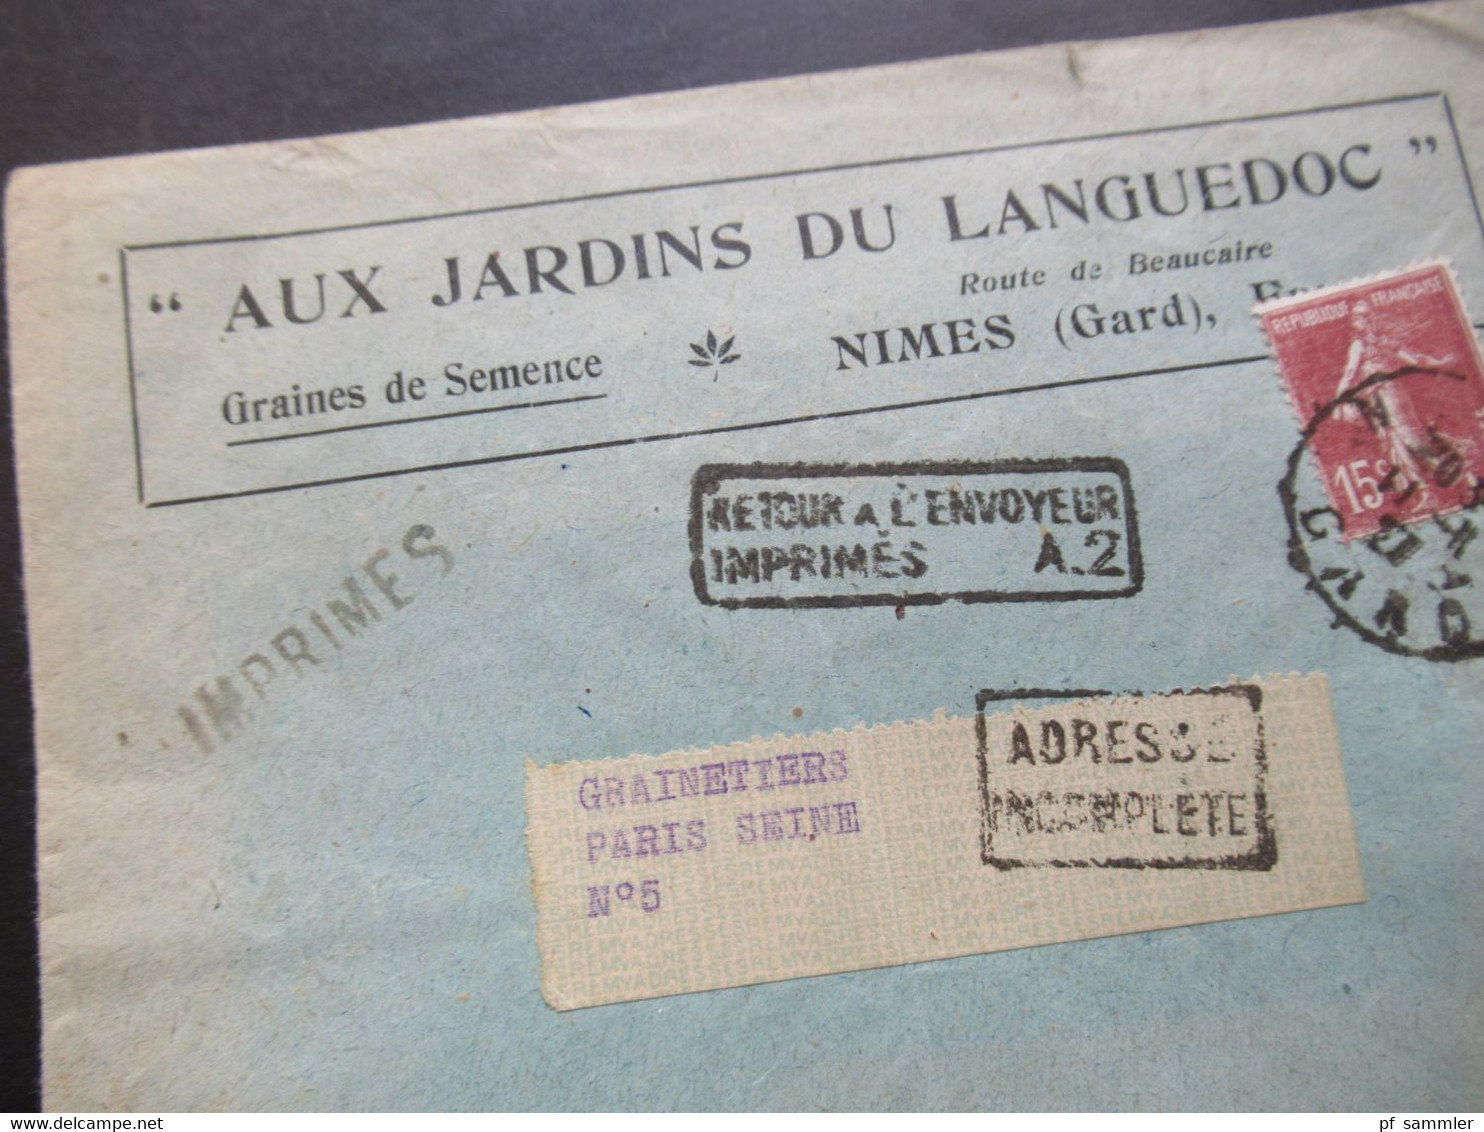 Frankreich 1927 Säerin Aux Jardins Du Languedoc Stempel Ra2 Retour A L'Envoyeur Imprimes A.2 Und Adresse Incomplete - 1906-38 Semeuse Camée